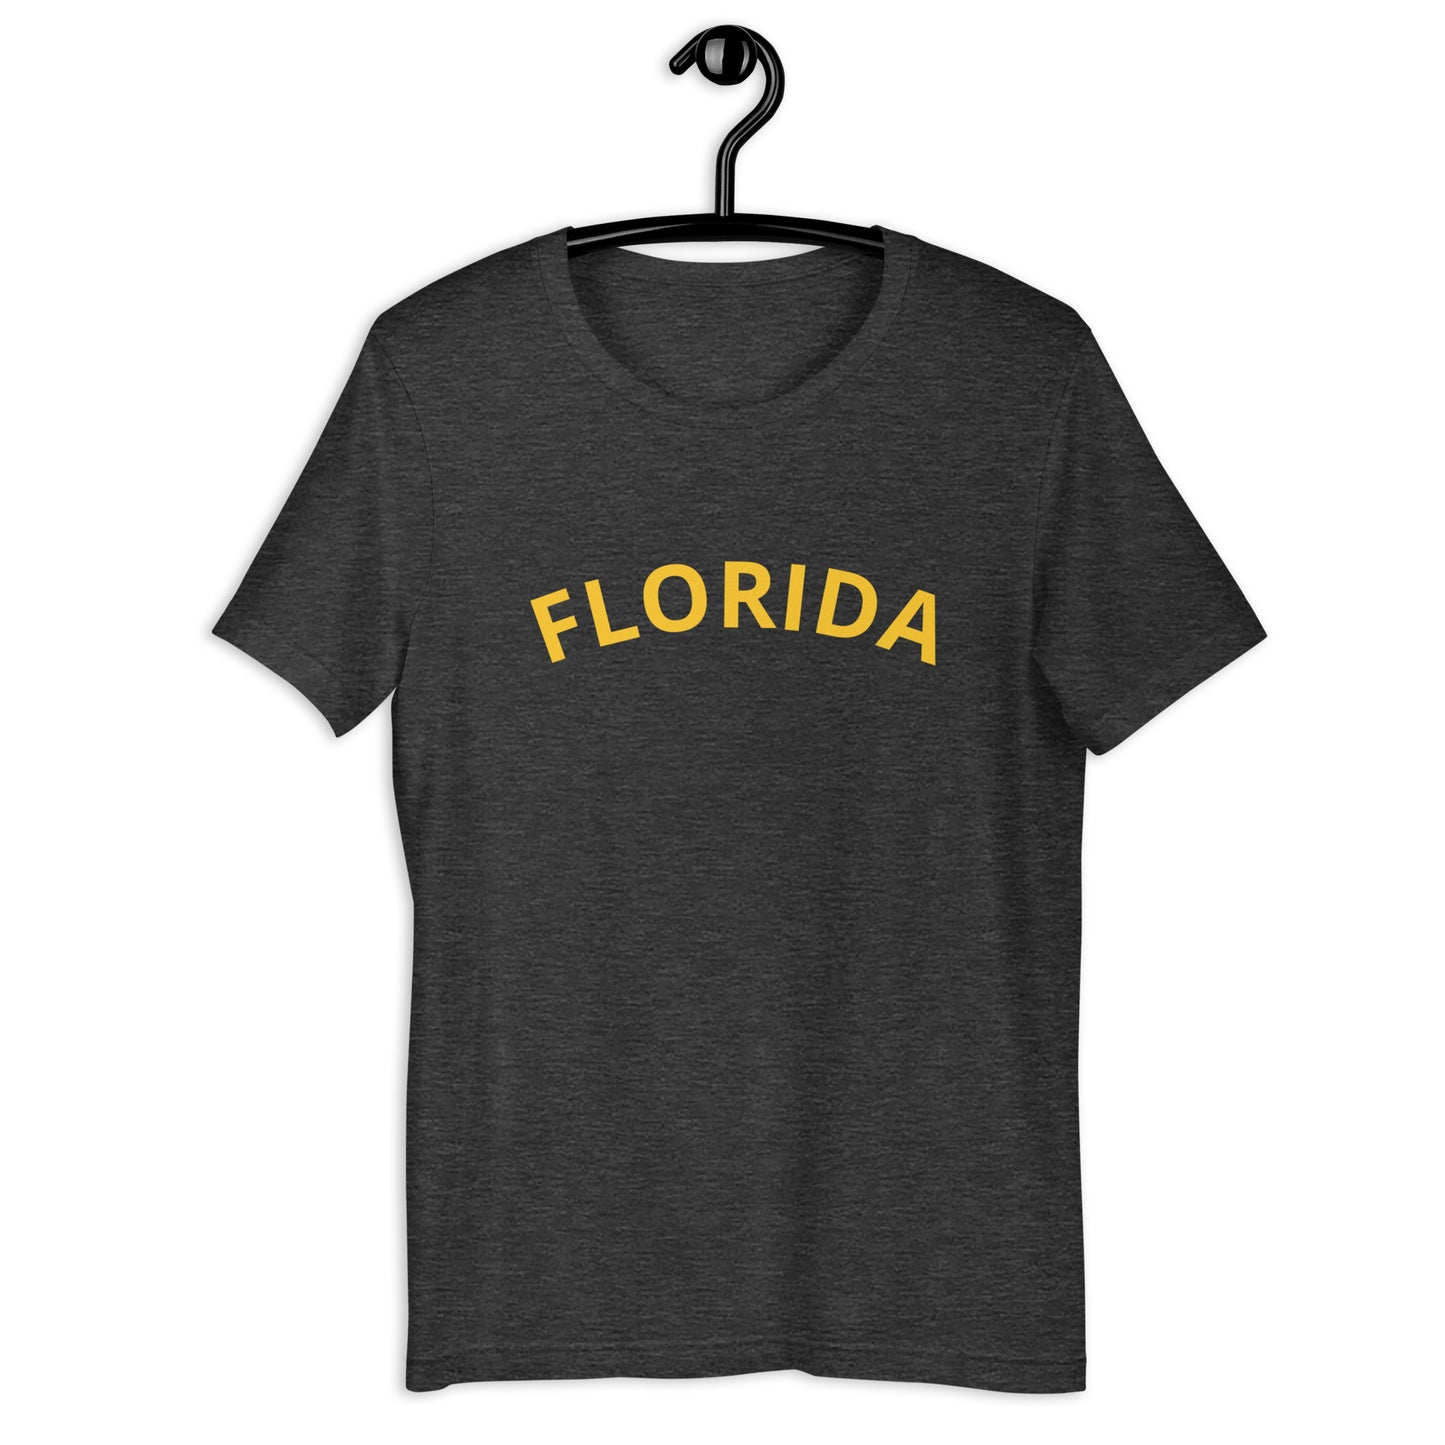 Florida unisex t-shirt